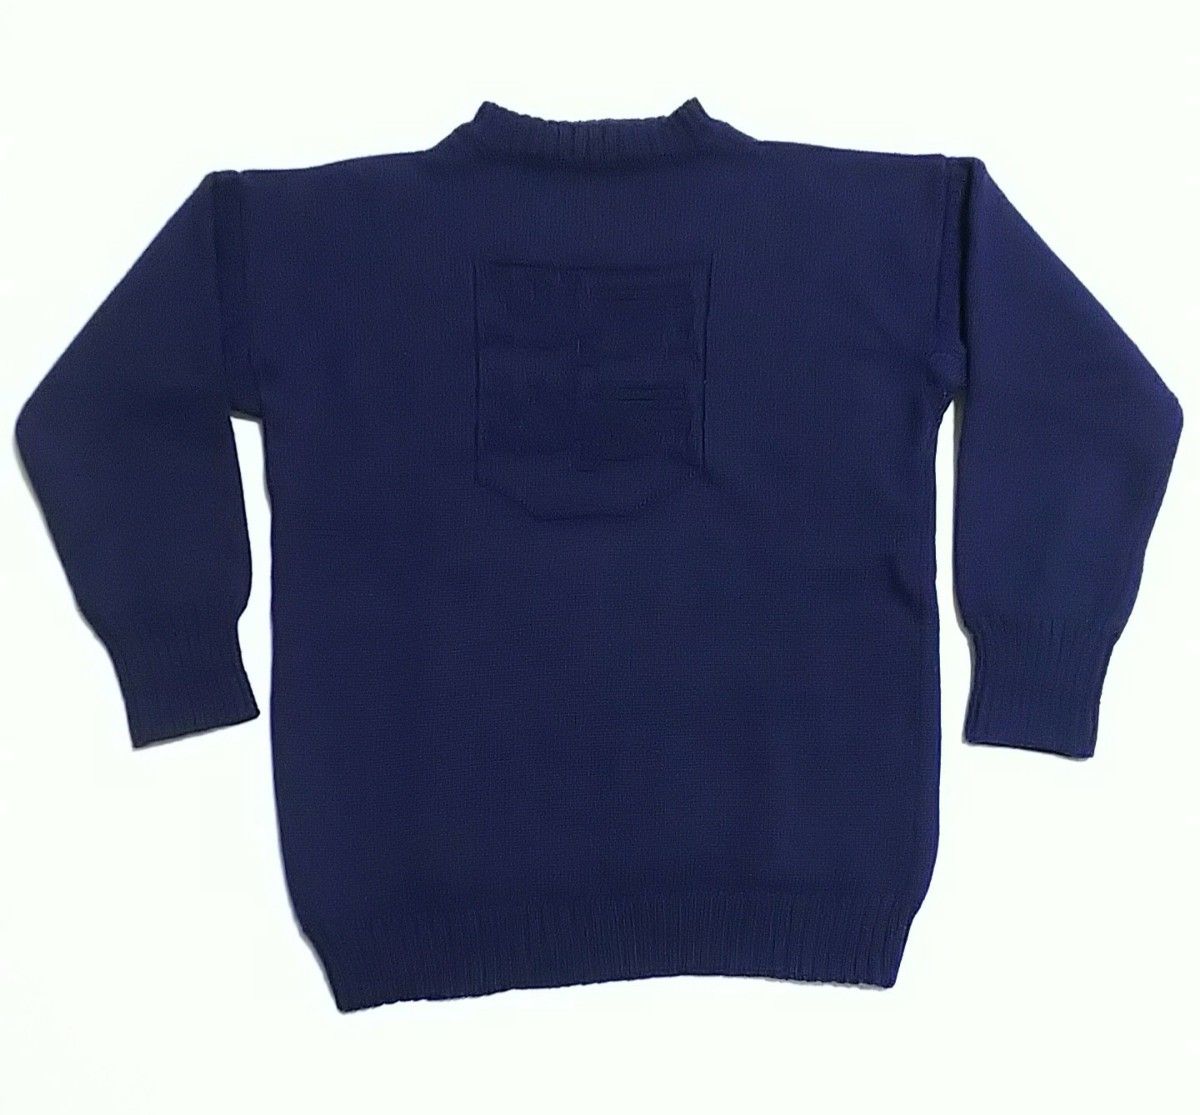 ヴィンテージ ガンジーセーター 紋章入り vintage guemsey sweater  セーター ニット